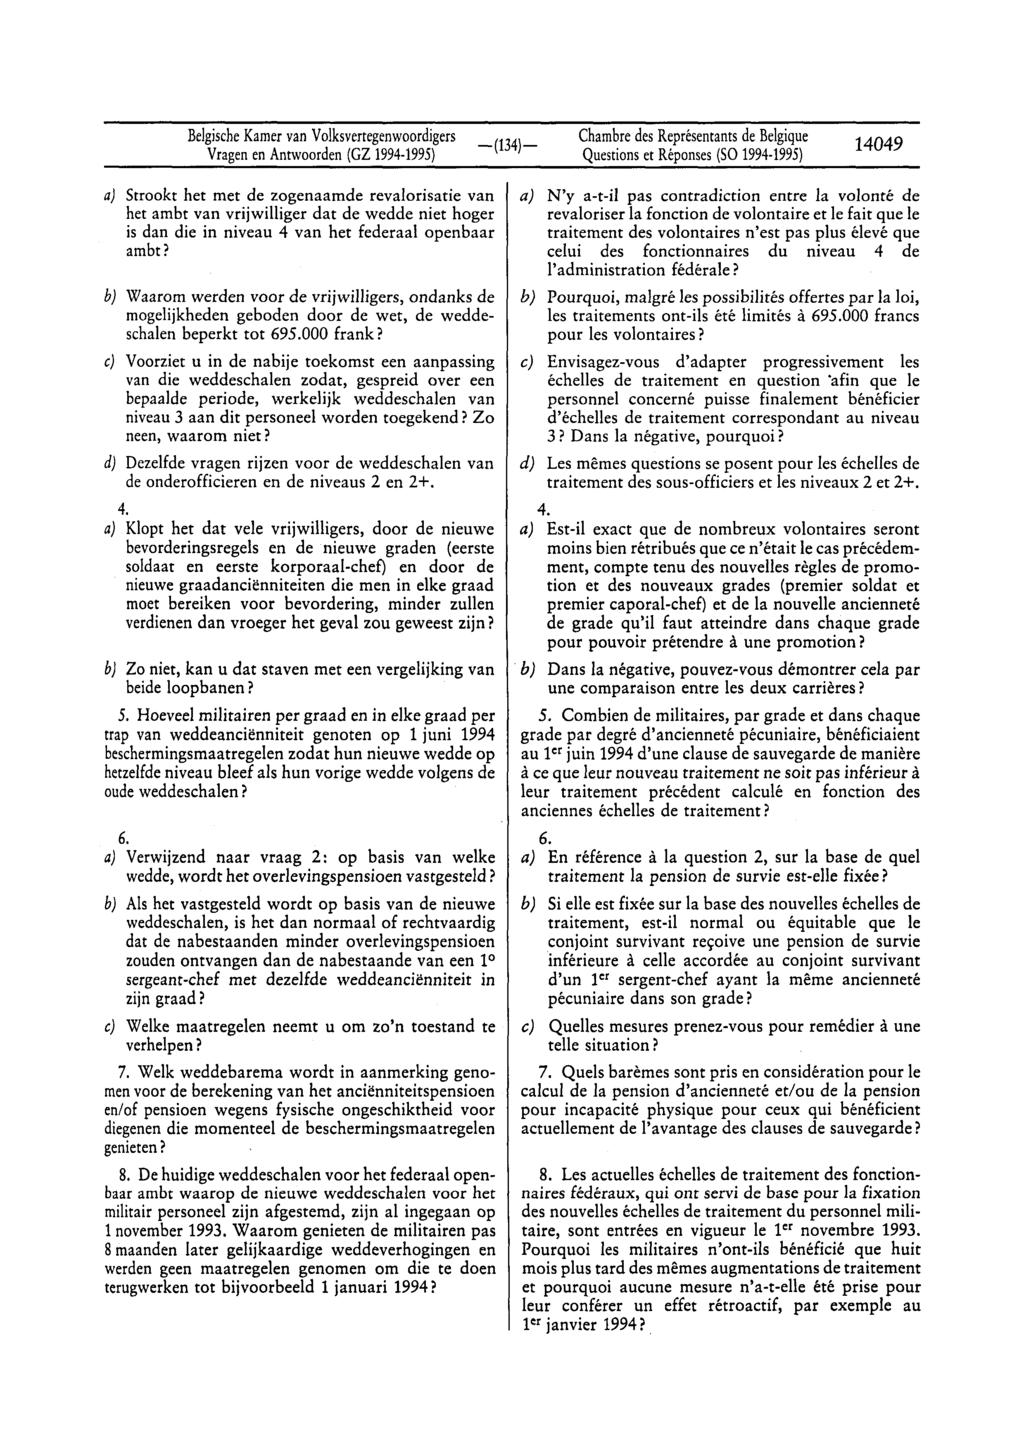 BelgischeKamervan Volksvertegenwoordigers Questionset Réponses(SO 1994-1995) 14049 a) Strookr het met de zogenaamde revalorisatie van het arnbt van vrijwilliger dar de wedde niet hoger is dan die in